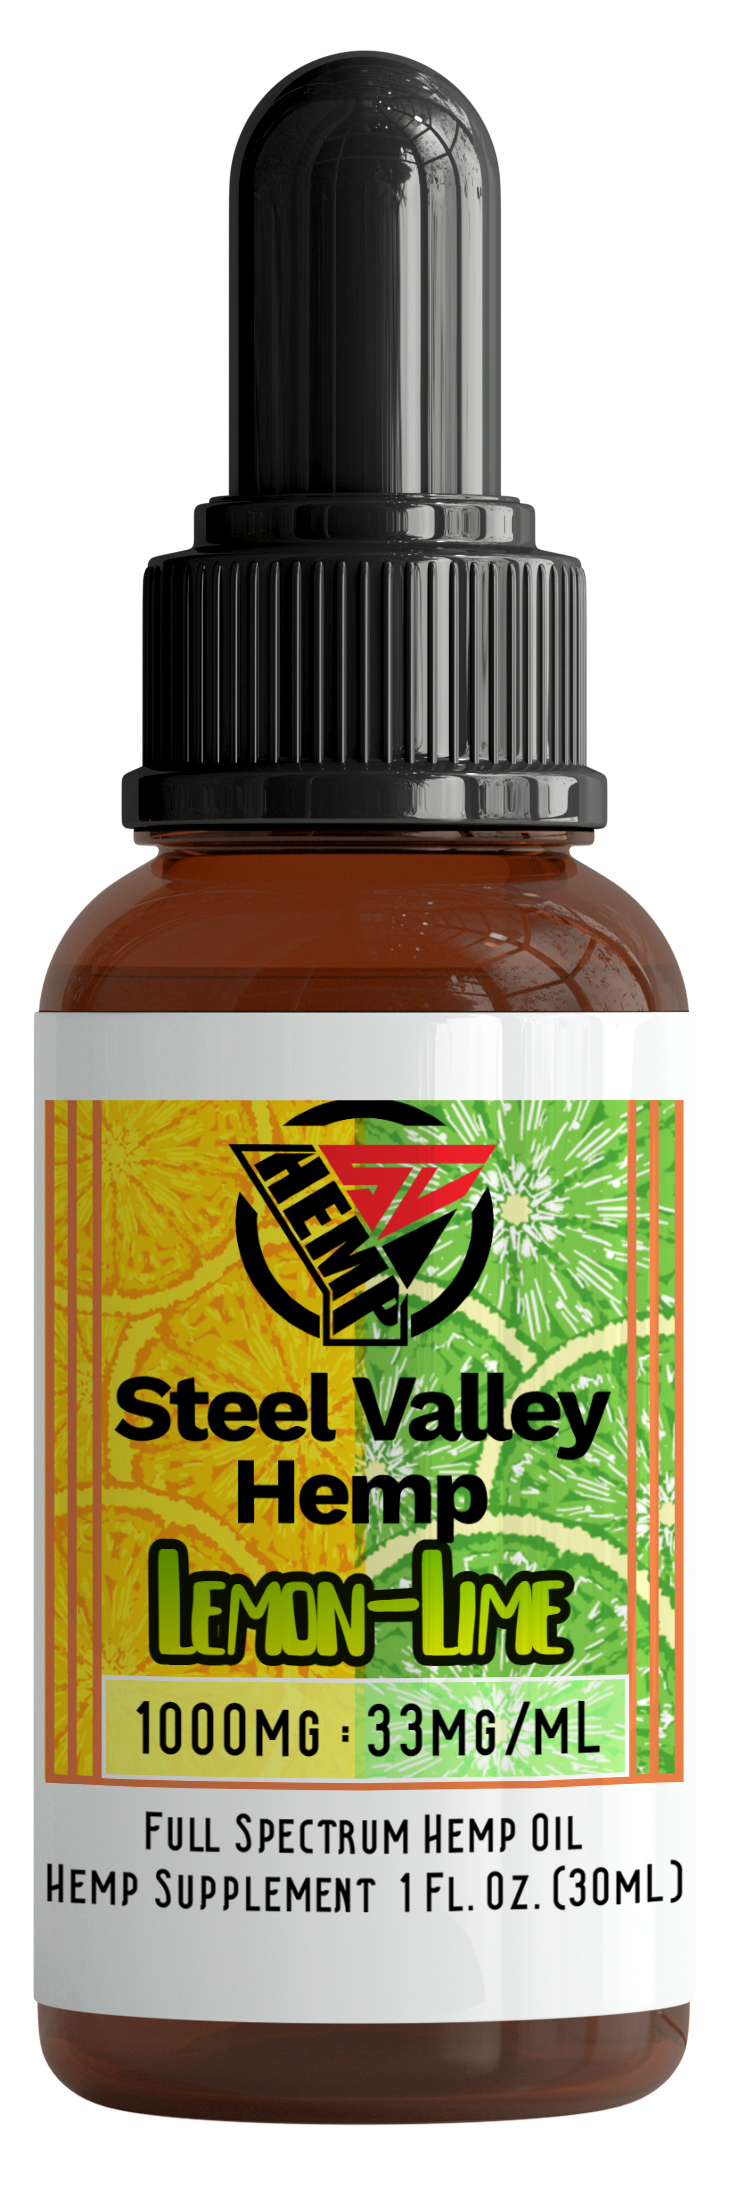 Steel Valley Hemp Full Spectrum Tincture Oil Lemon/Lime 1000mg